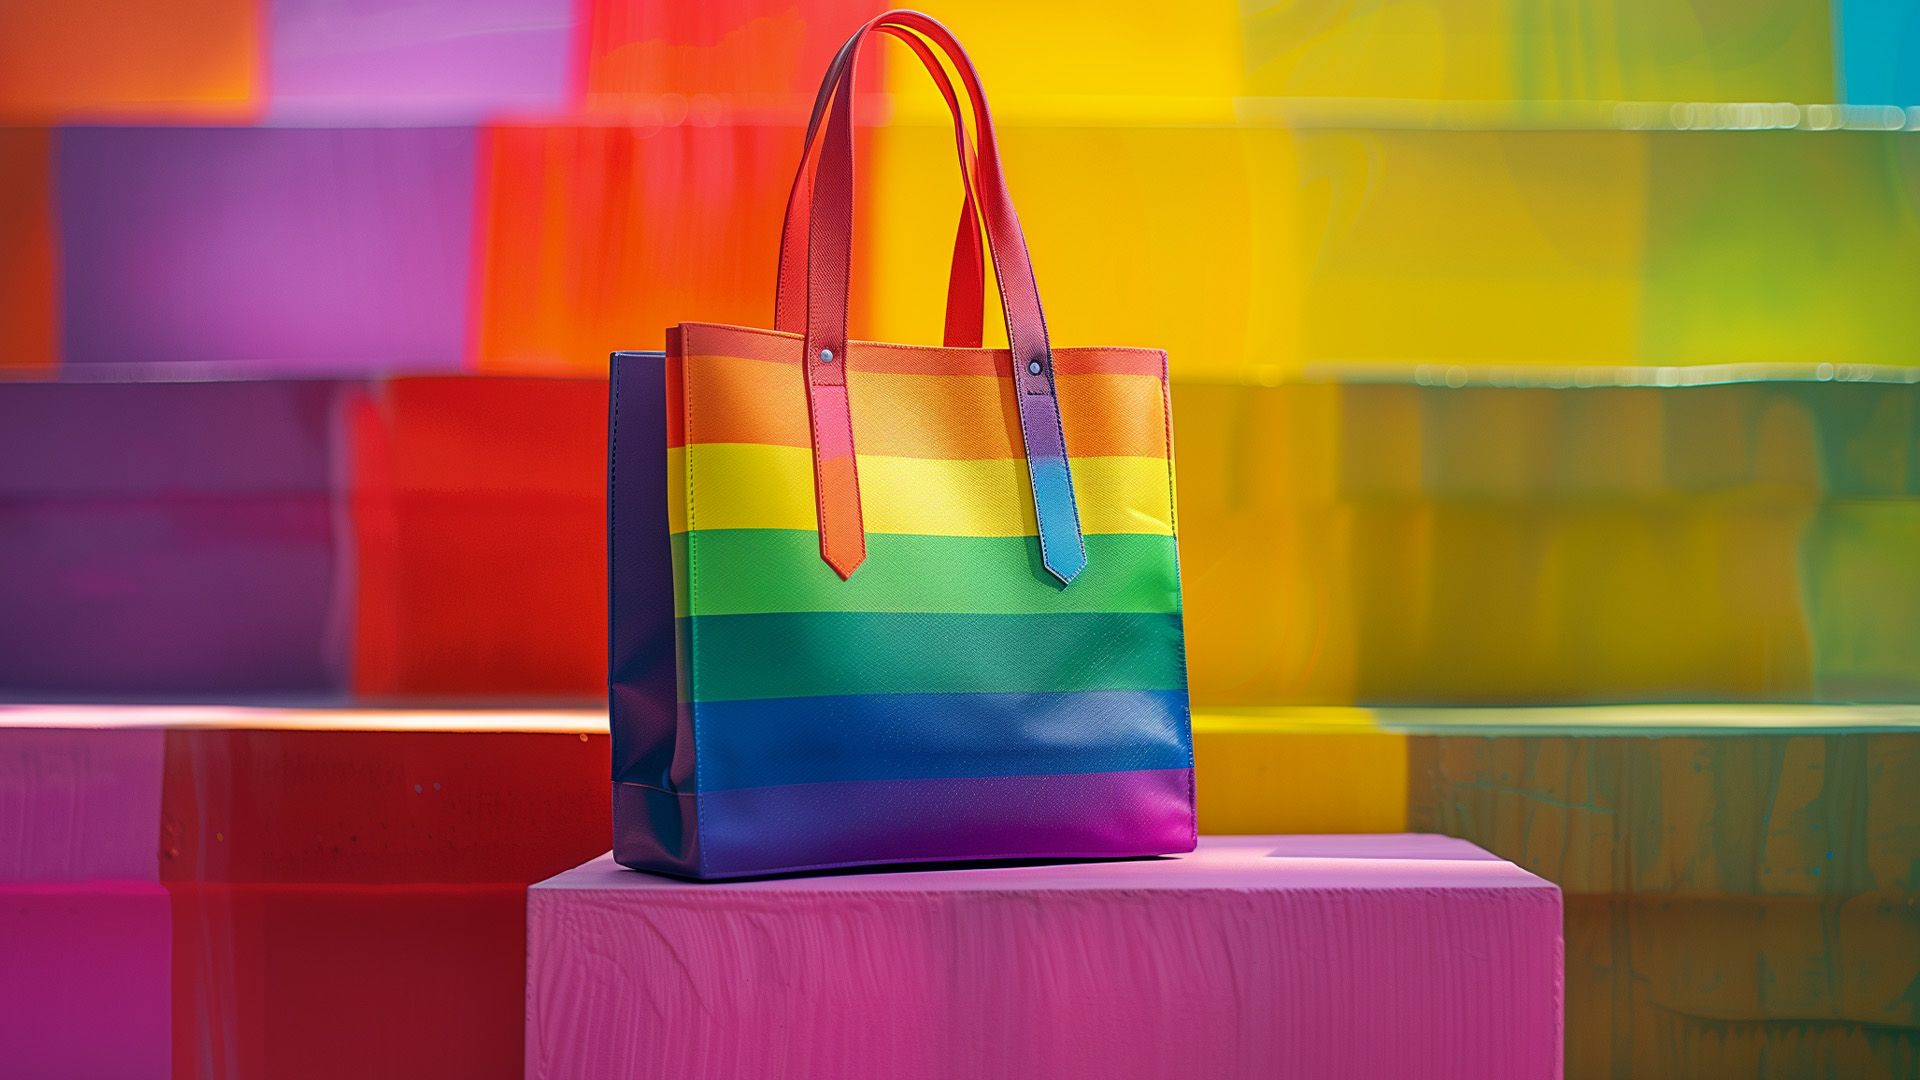 Promotional image for Можно ли покупать продукцию компаний, которые поддерживают движение ЛГБТ?